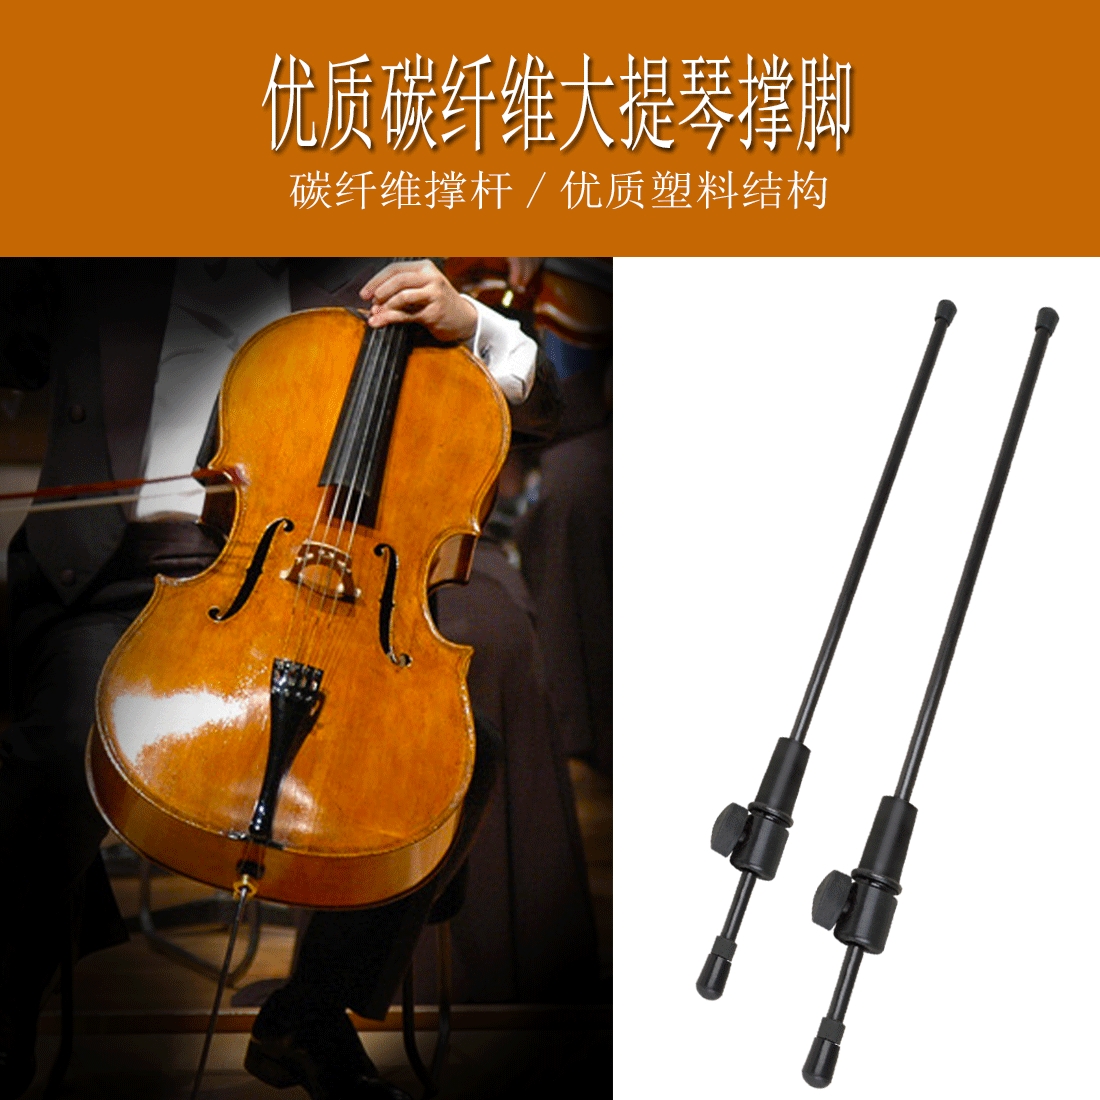 大提琴尾柱脚撑防滑碳纤维天然乌木撑脚架可调节大提琴支撑杆-封面